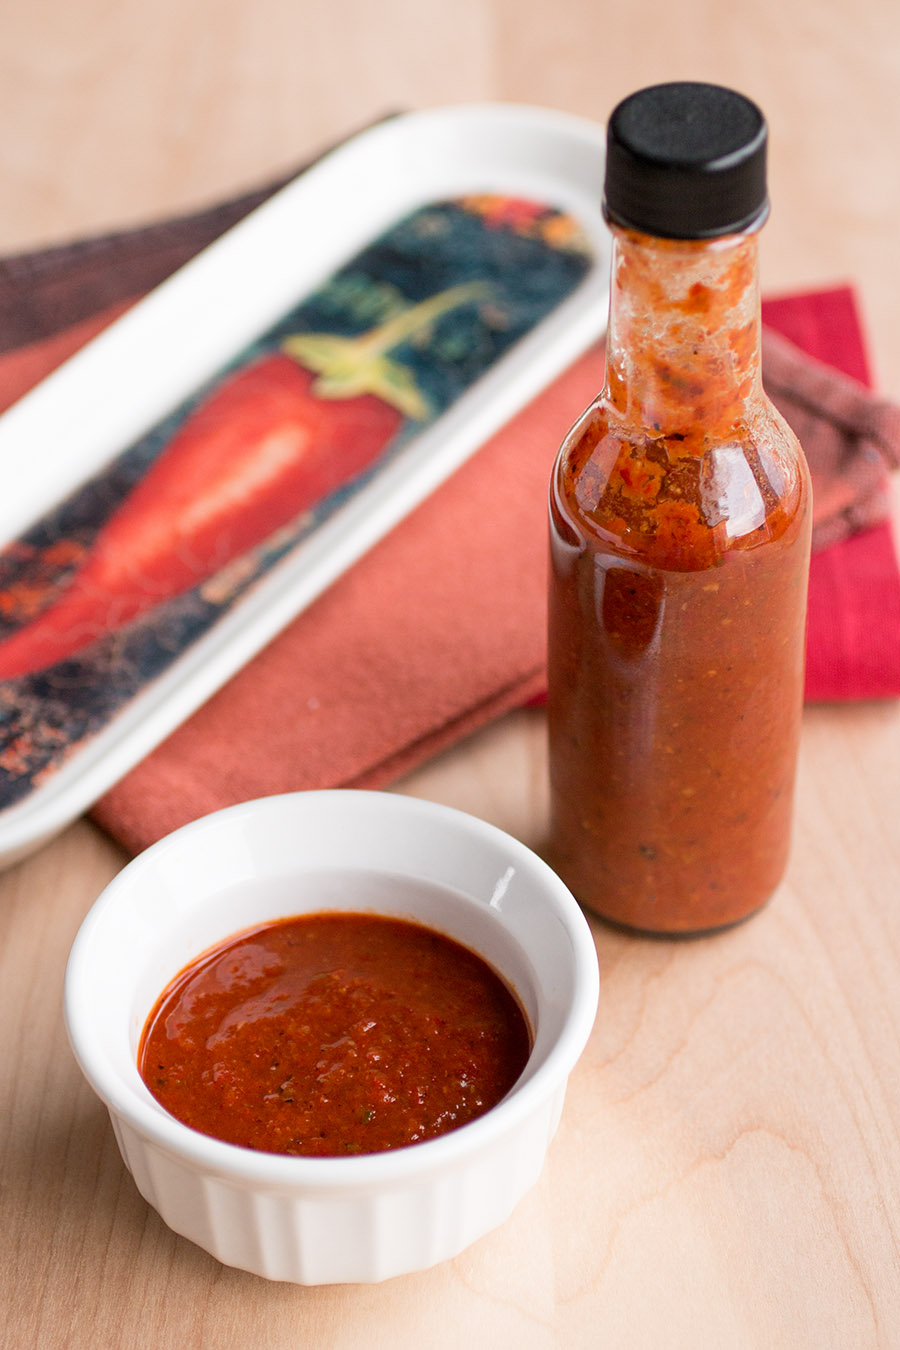 Super Hot Hot Sauce Recipe